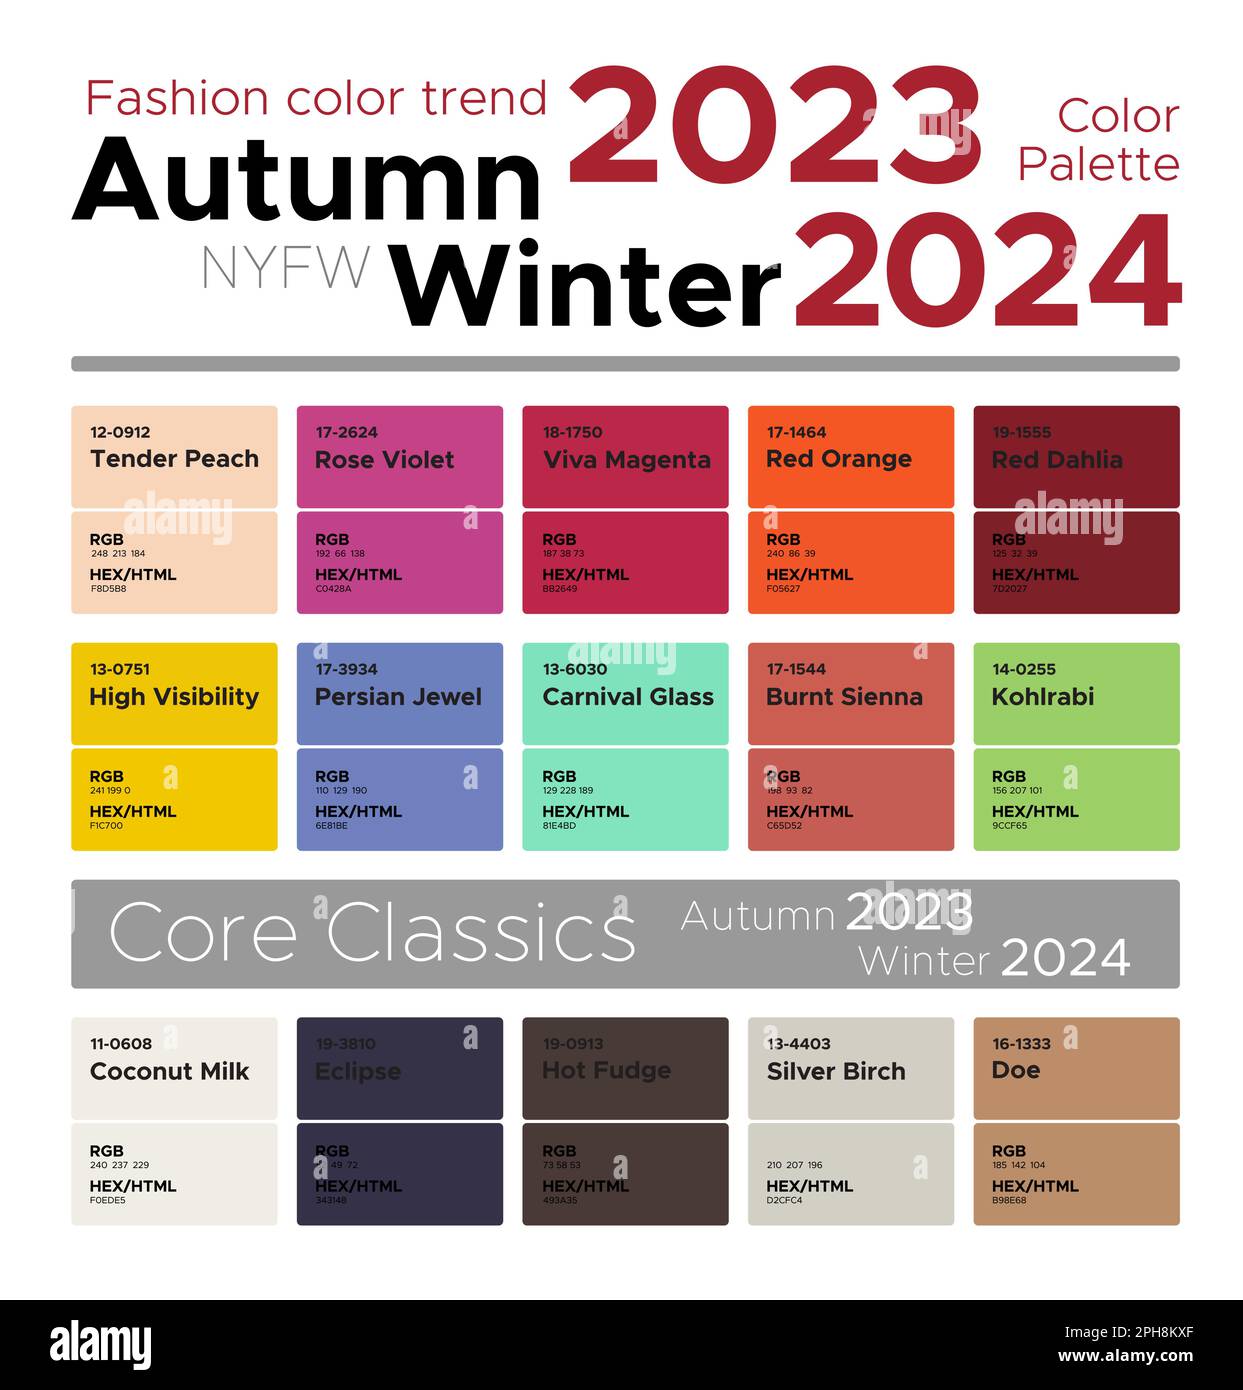 Álbumes 100+ Foto Paleta De Colores Otoño/invierno 2022/2023 Mirada Tensa